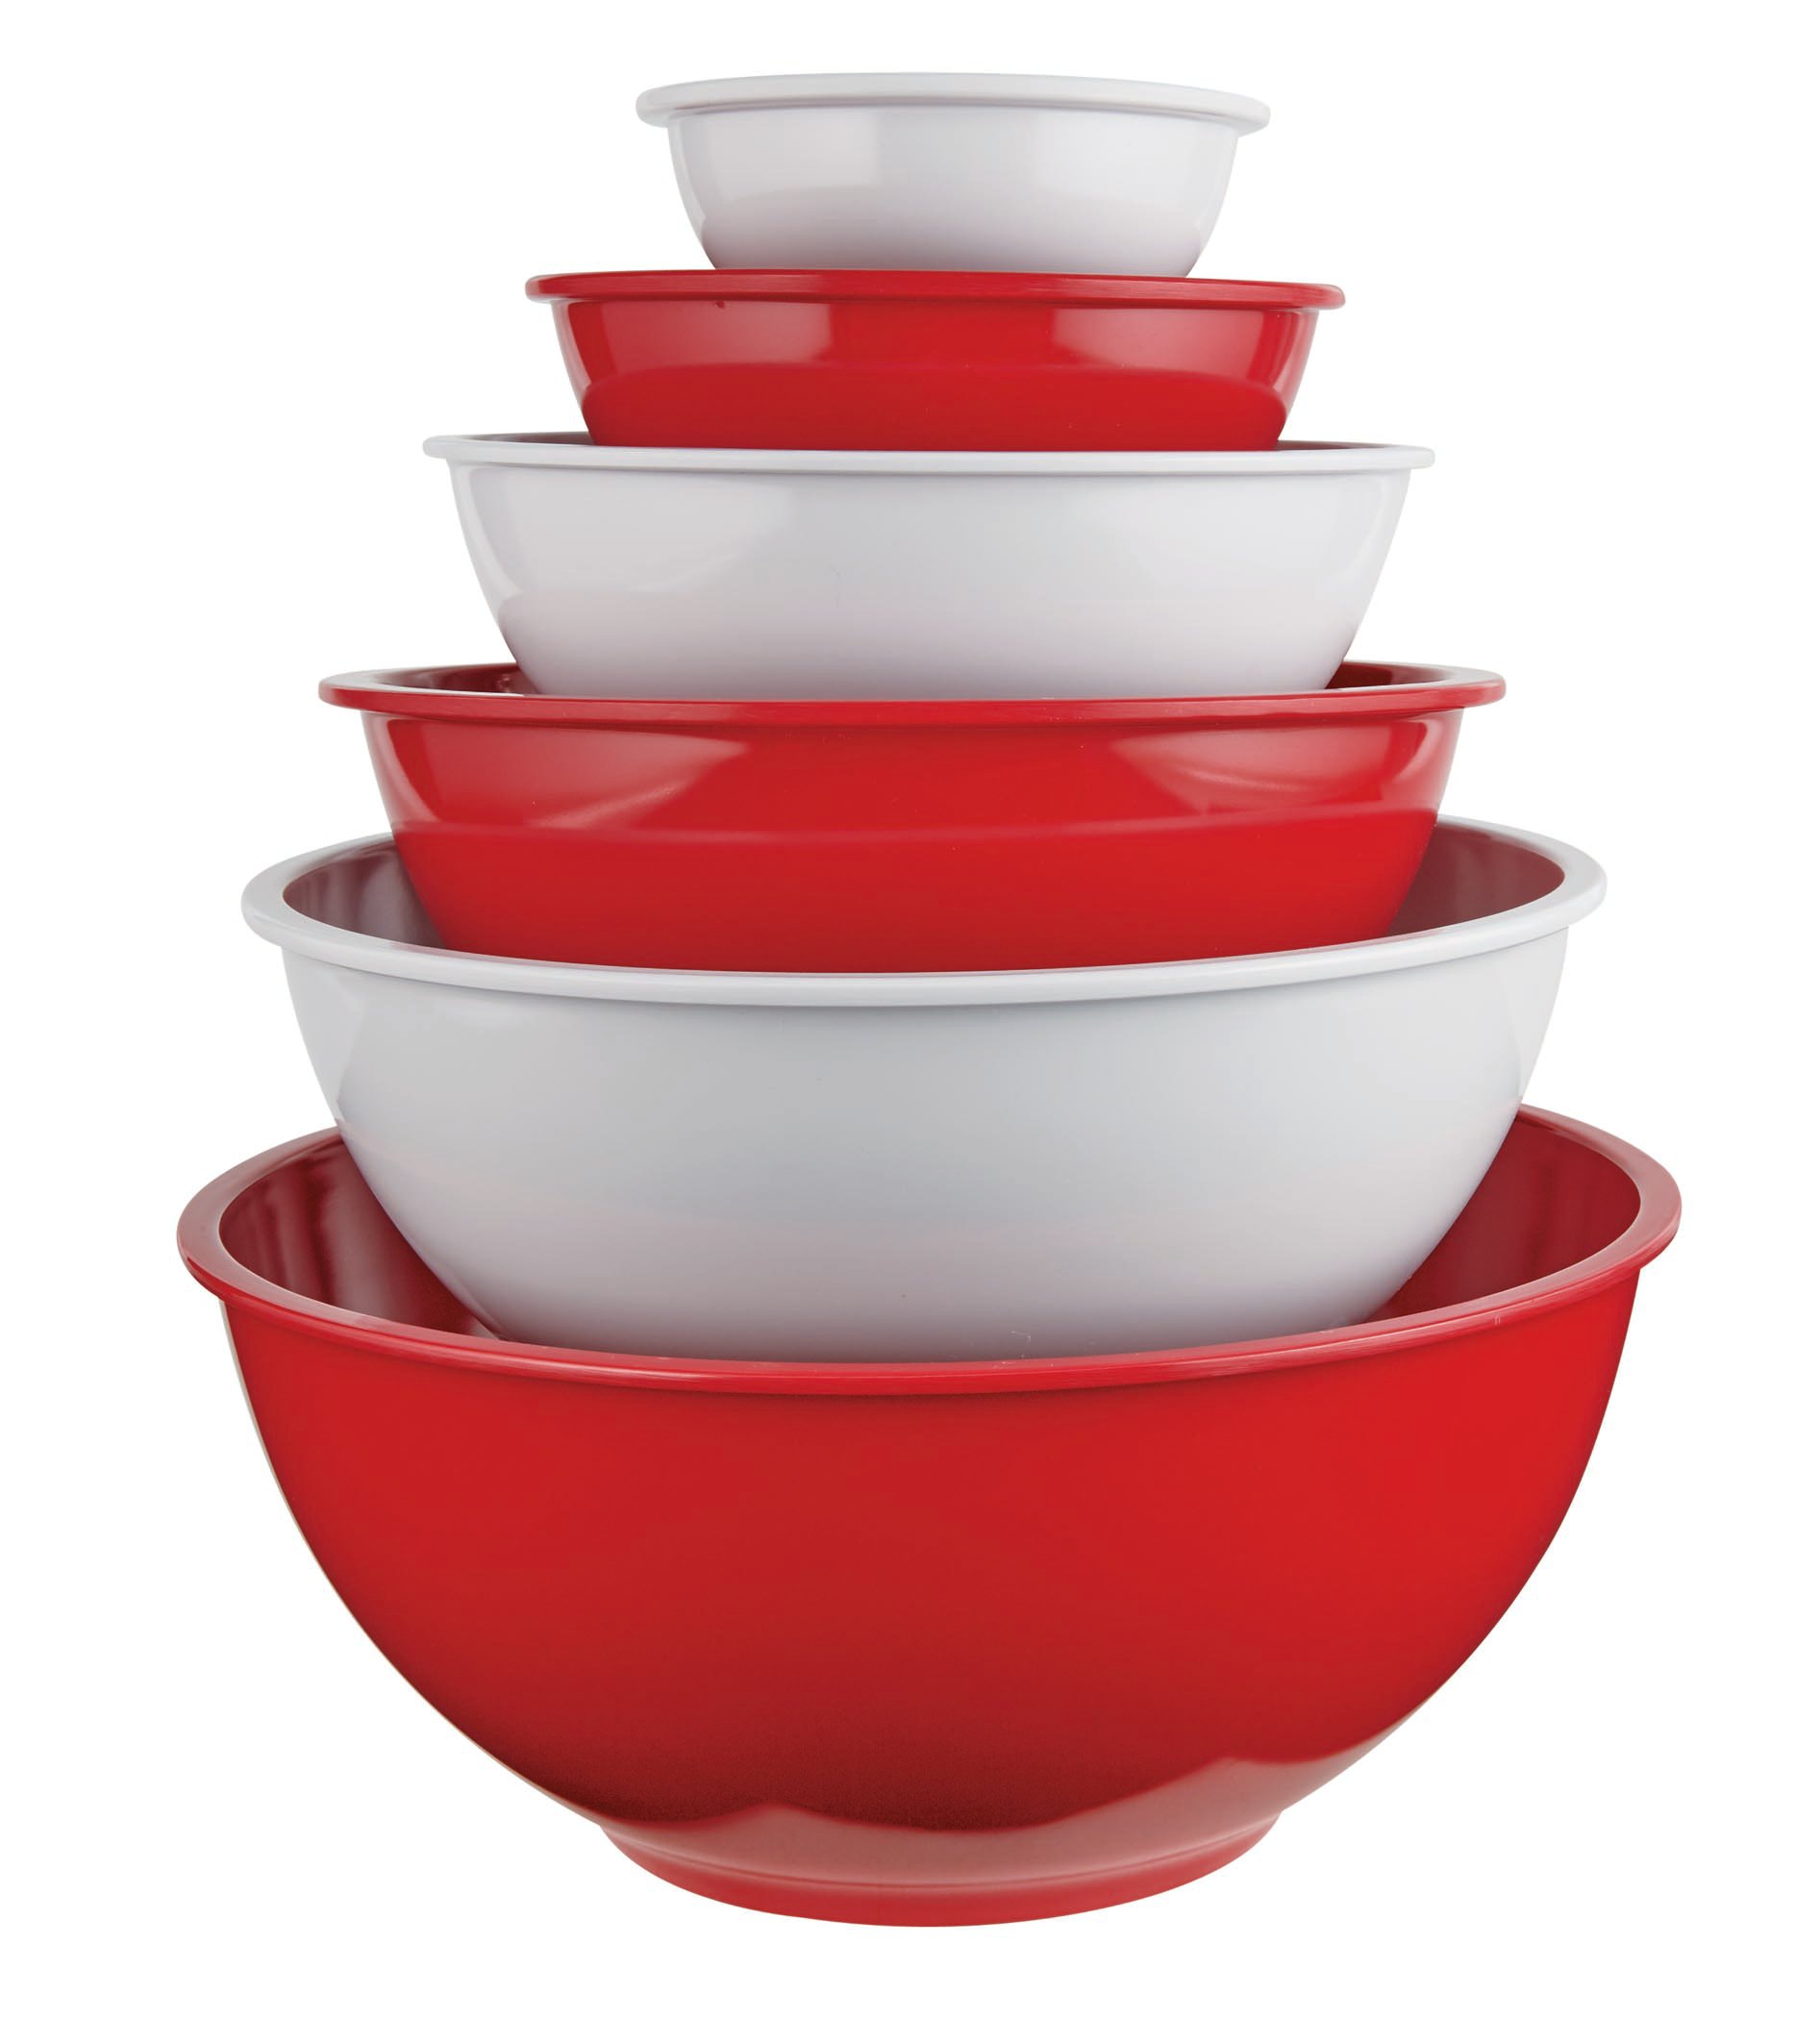 Cocinaware Nested Mixing Bowls - Shop Mixing Bowls at H-E-B